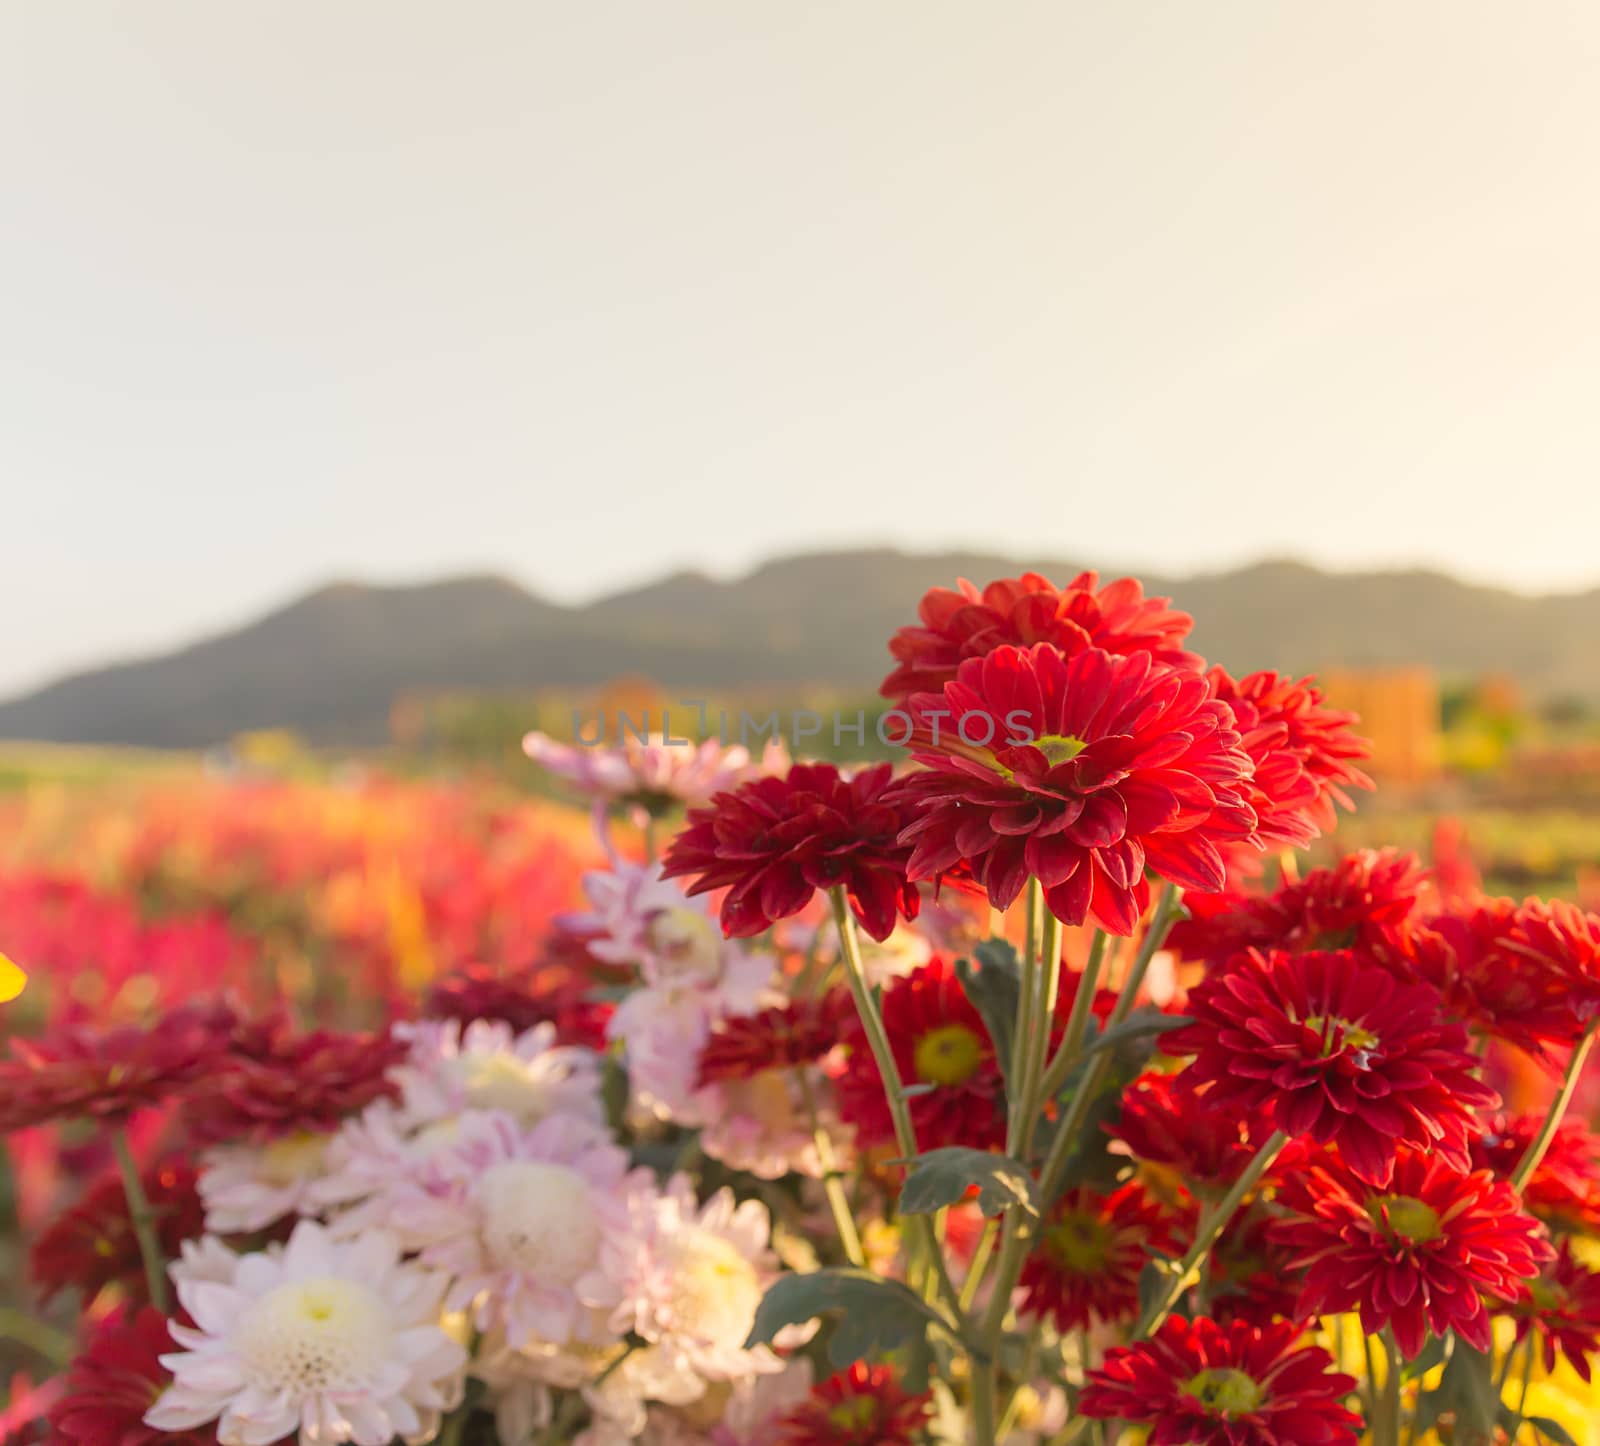 Colorful Red gerbera or chrysanthemum flowers in garden